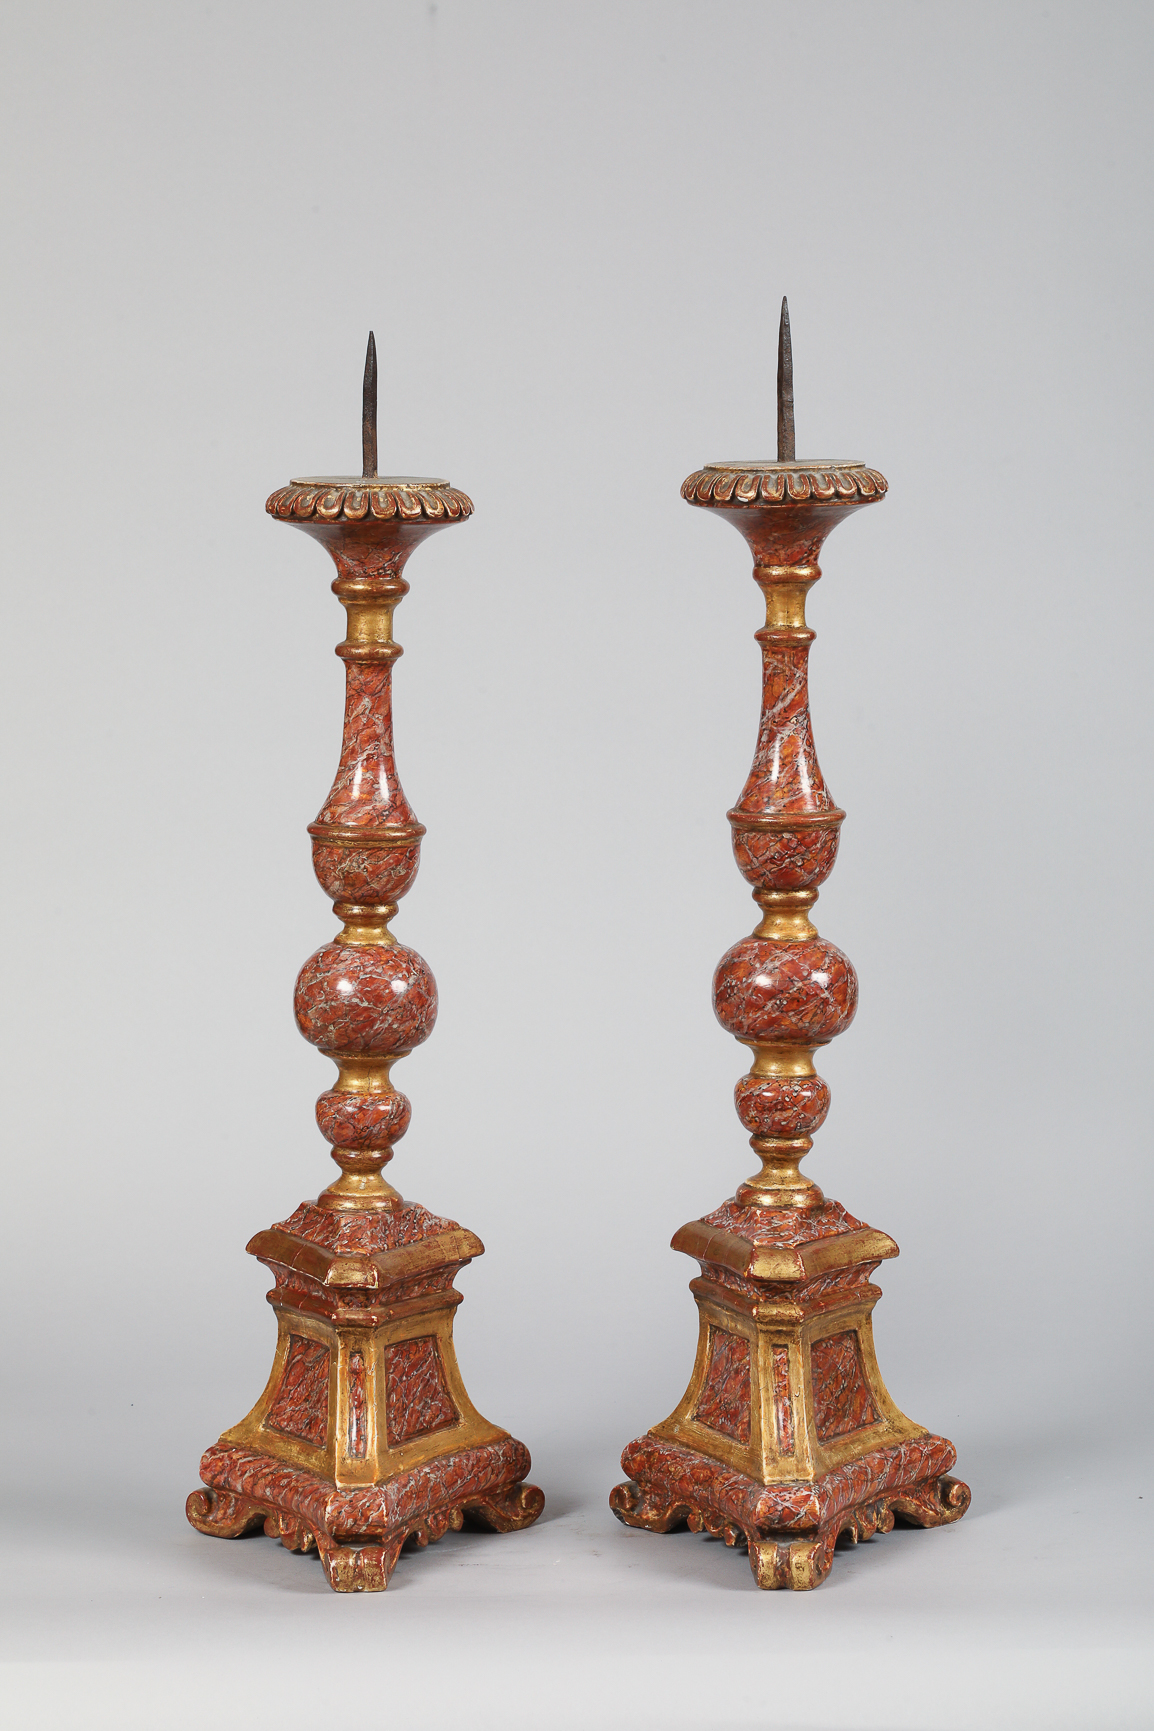 Paire de chandeliers en bois laqué “trompe œil” France 18 eme siècle 65 et 77cm - Image 2 of 3